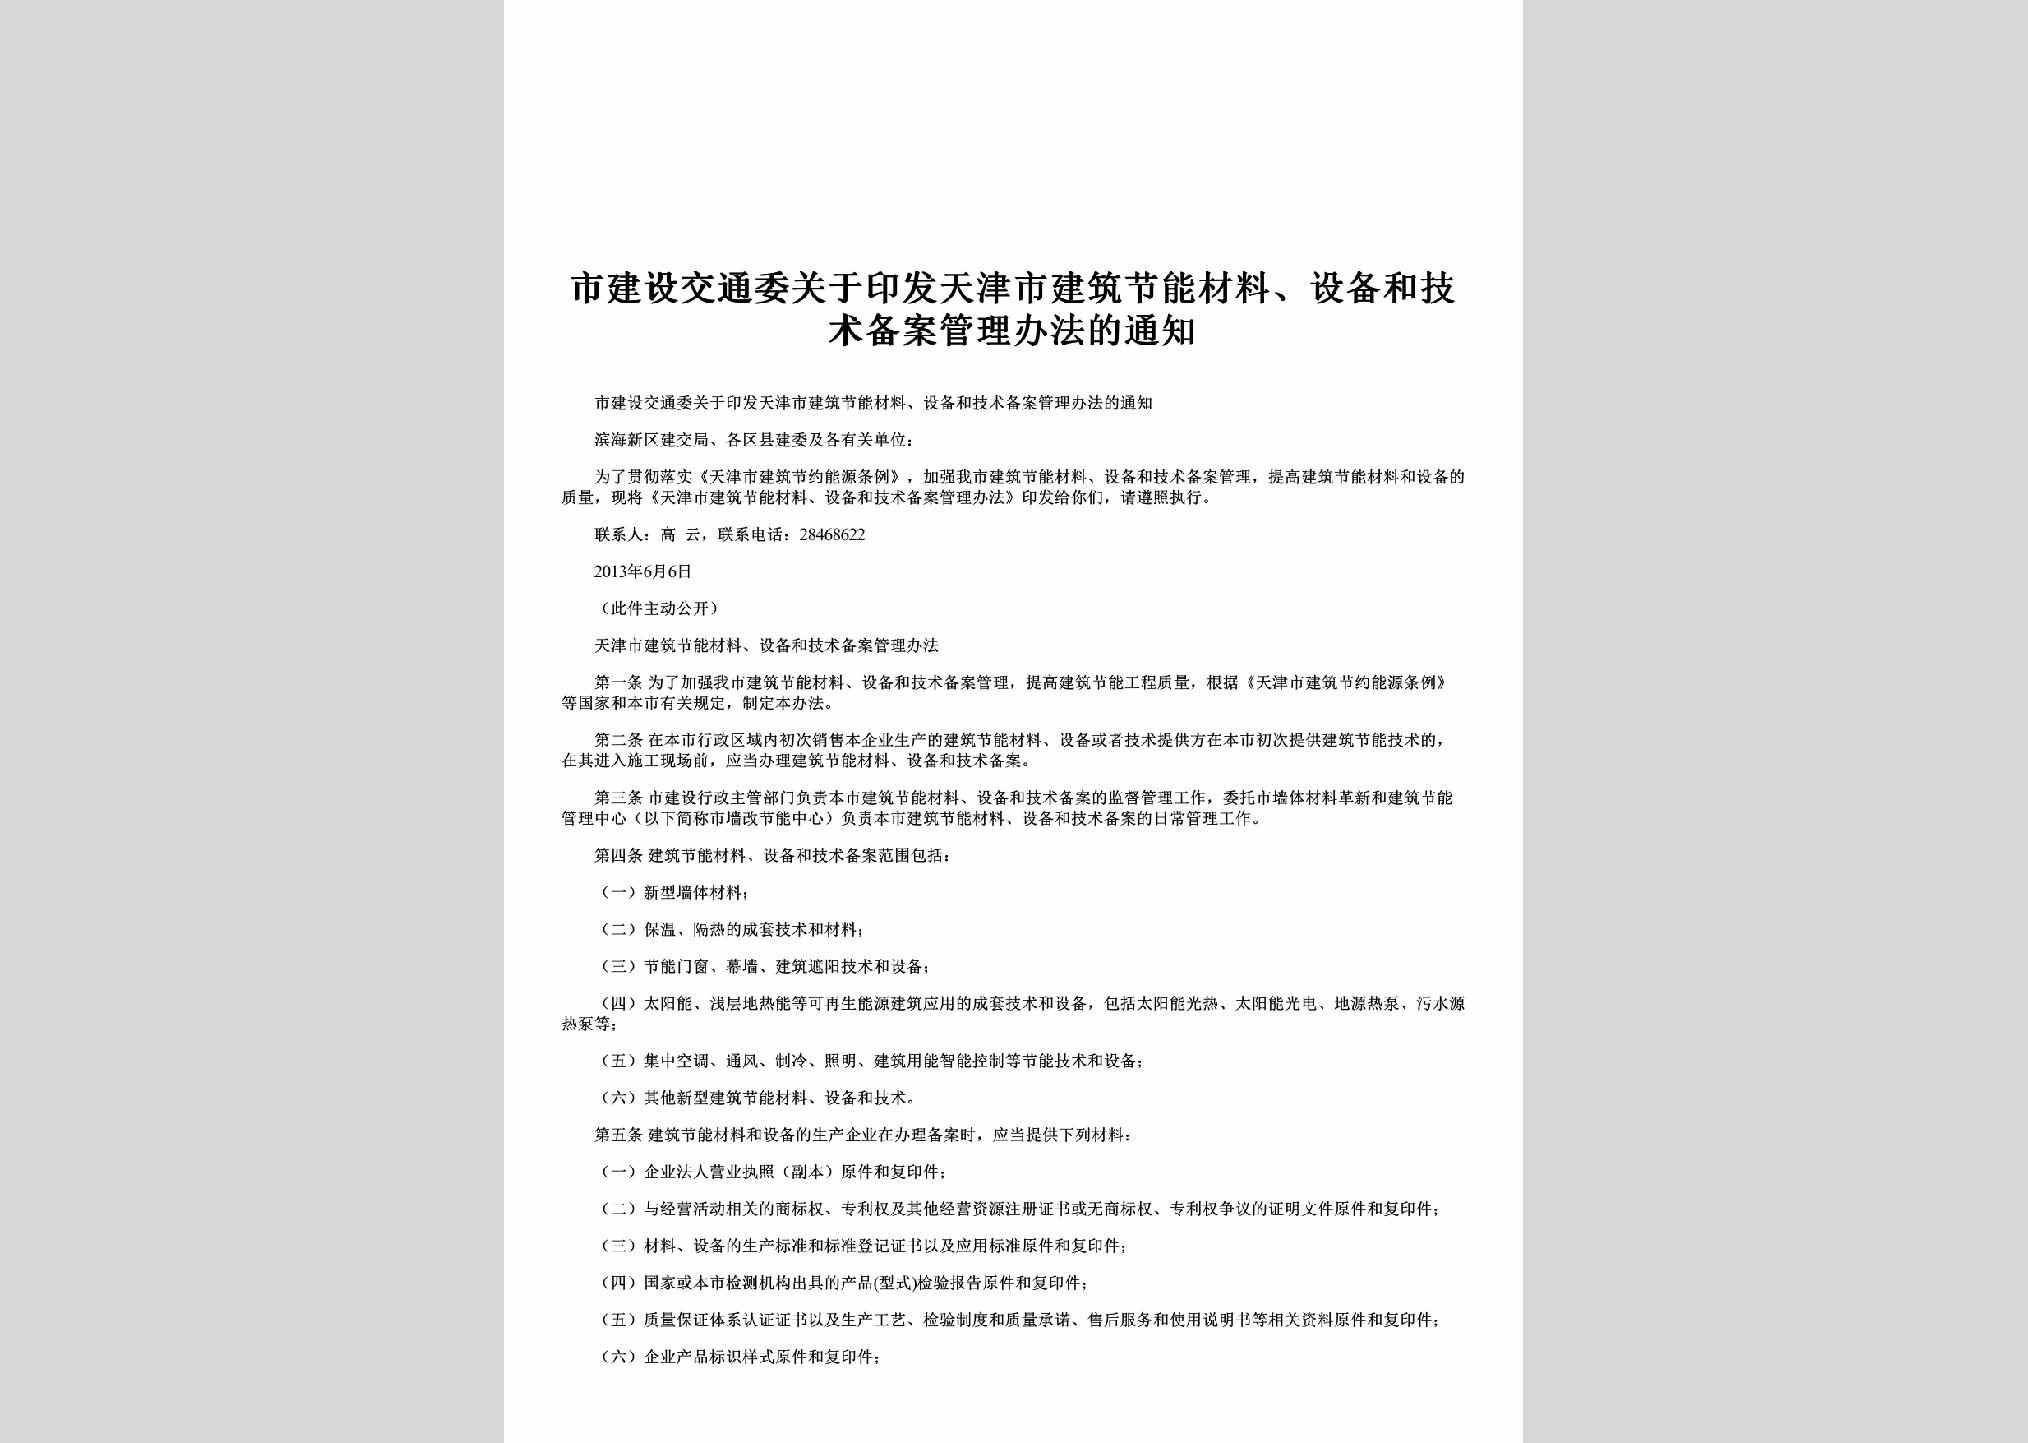 TJ-JSBAGLBF-2013：关于印发天津市建筑节能材料、设备和技术备案管理办法的通知